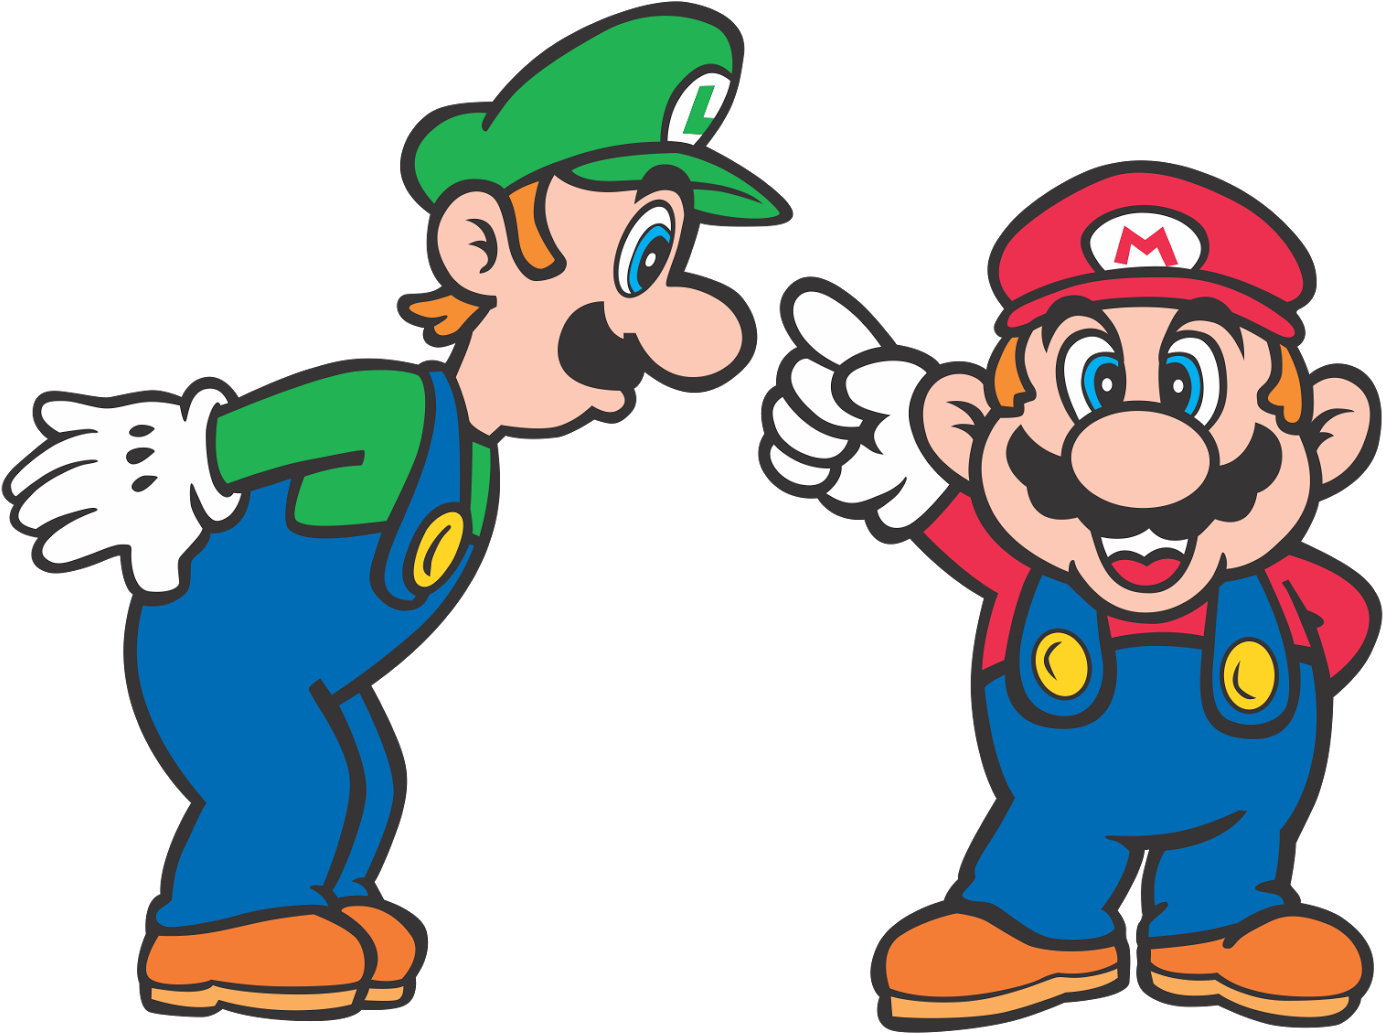 Mario bros advance. Марио БРОС 3. Super Mario Advance 4 super Mario Bros. 3 Луиджи. Марио и Луиджи вектор. Супер Марио БРОС 4 на 3.